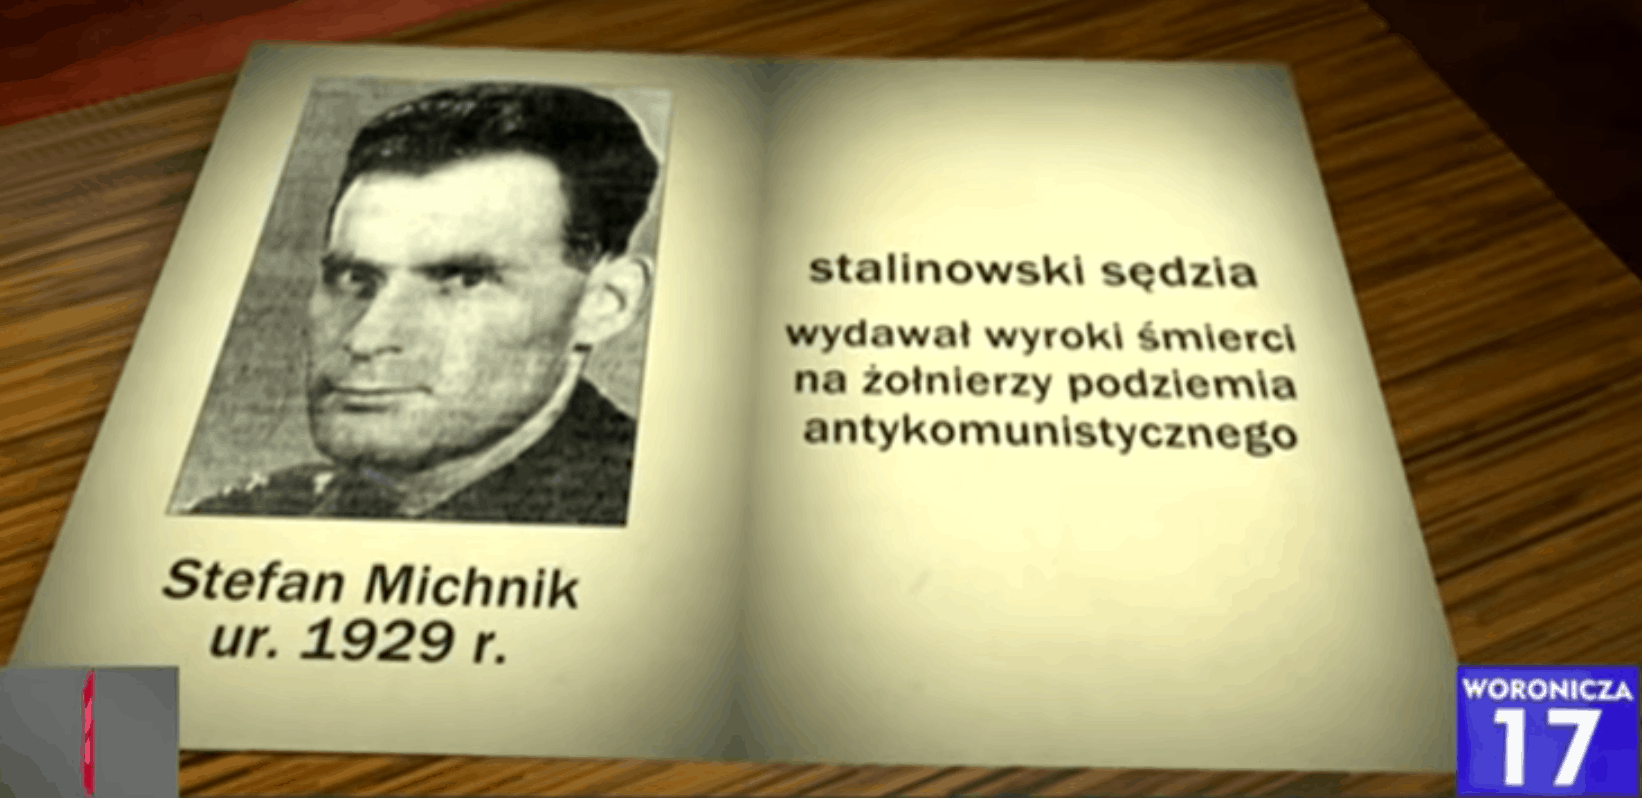 Stefan Michnik nie żyje, o jego śmierci poinformował jego brat Adam Michnik. Stefan był stalinowskim sędzią. Zmarł 27 lipca 2021 roku.